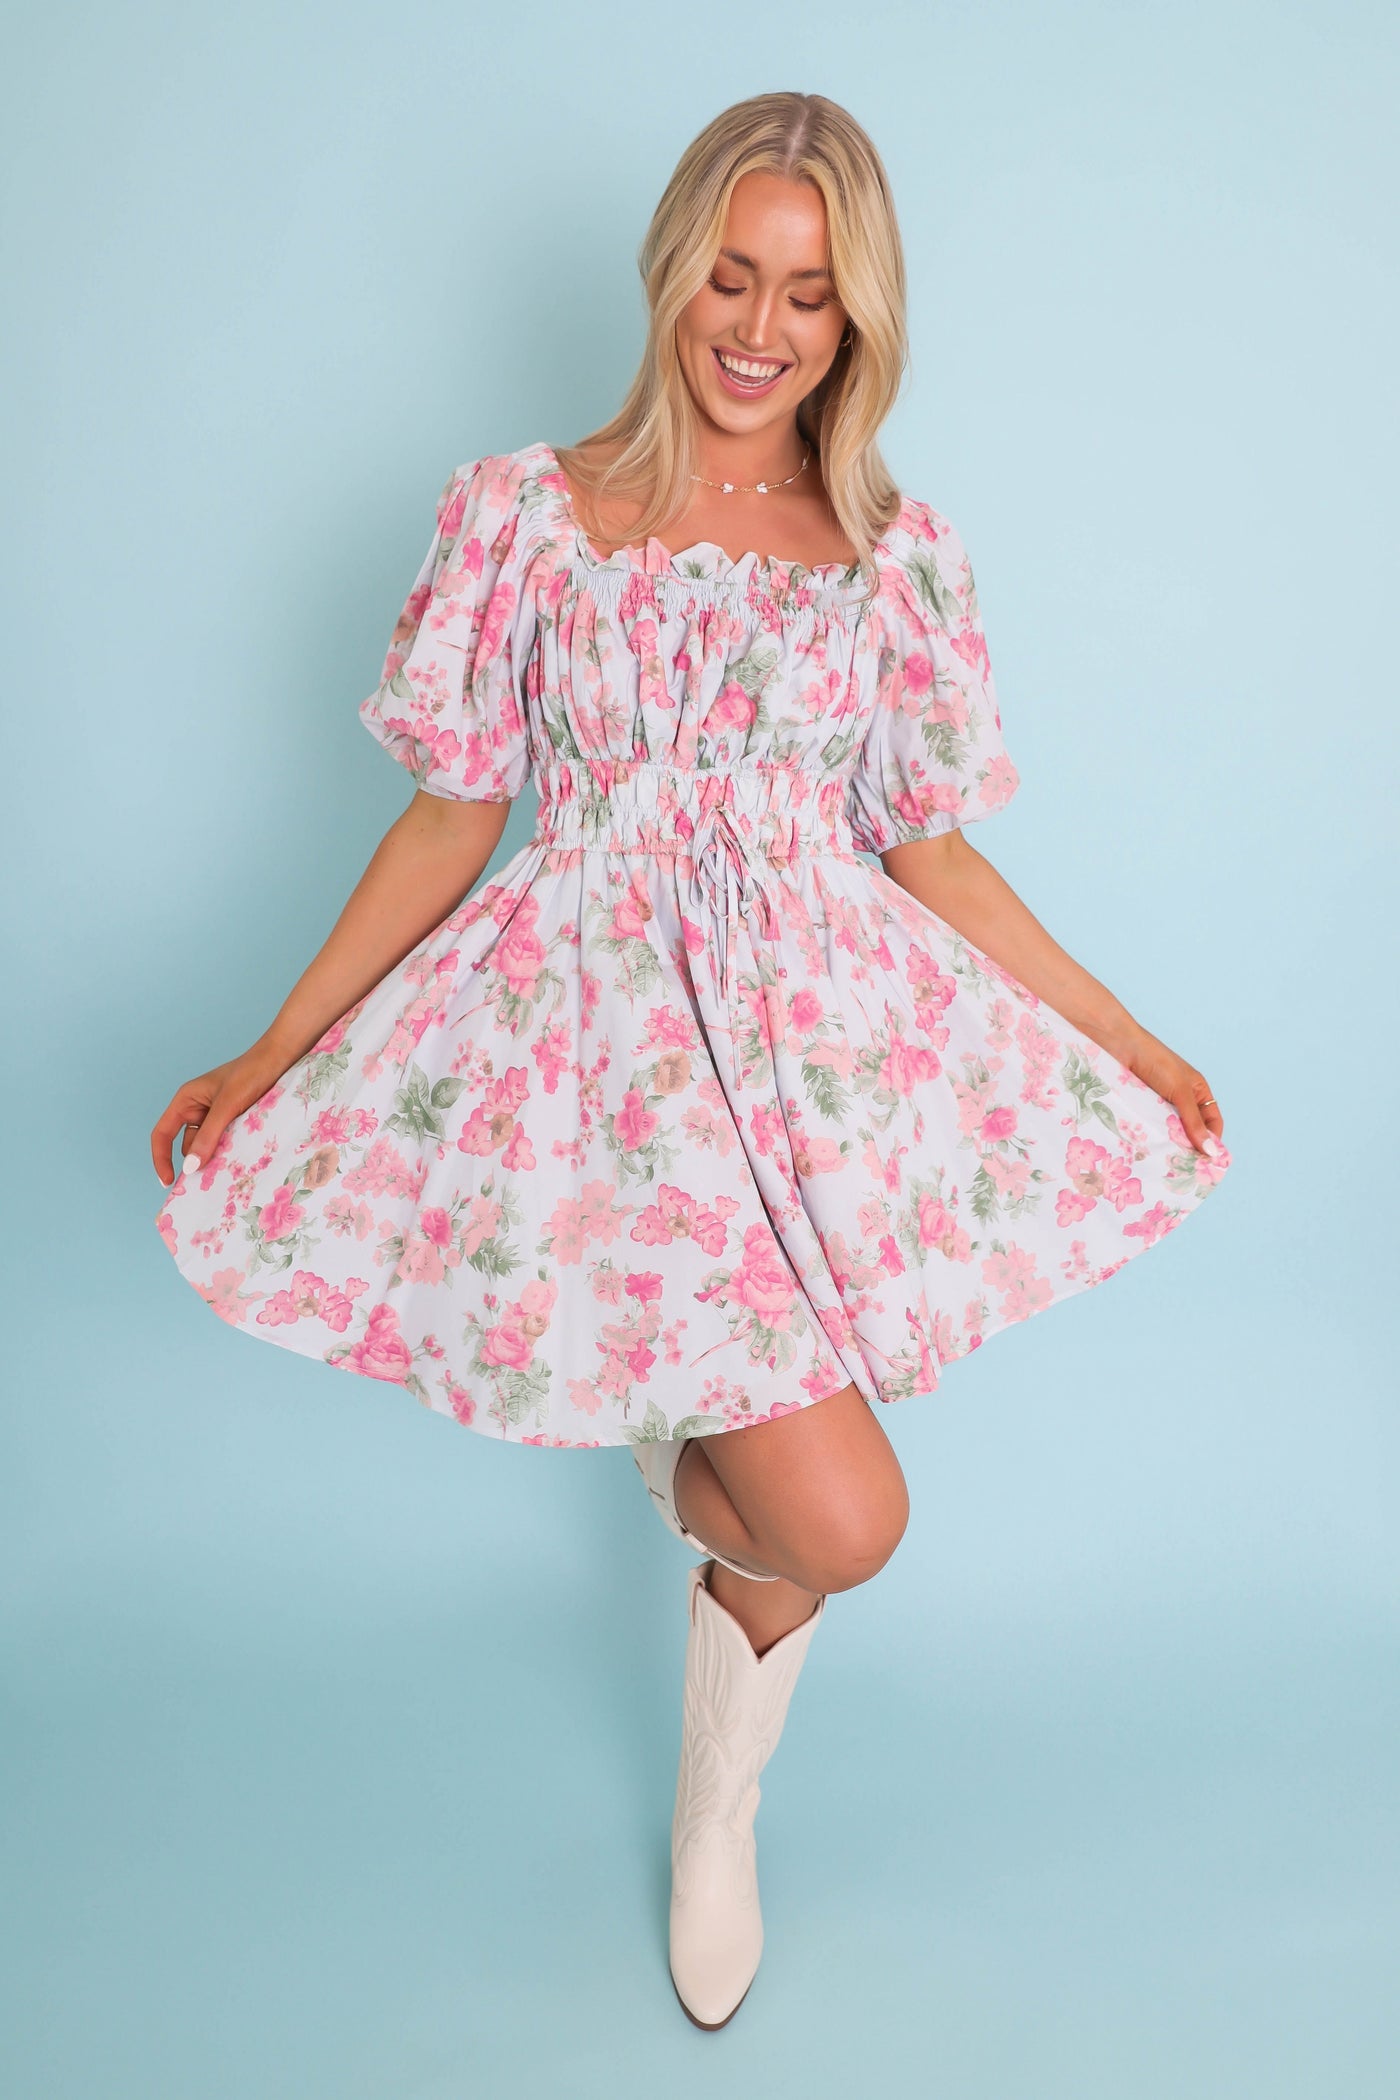 Women's Pleated Tulle Dress- Women's Girly Spring Dresses- &Merci Floral Tulle Dress